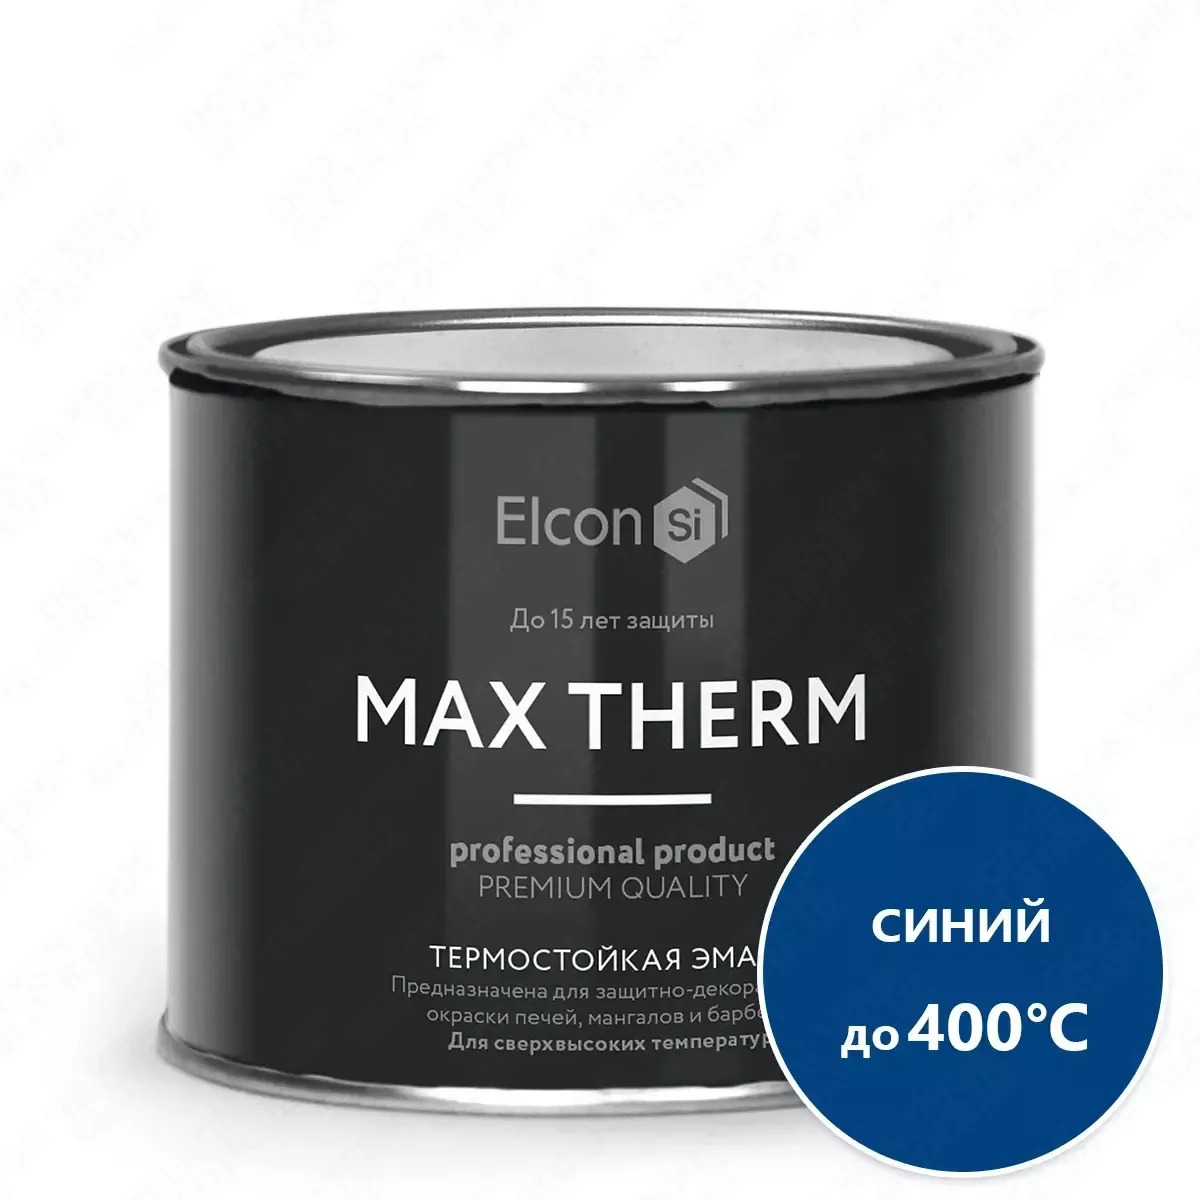 Термостойкая антикоррозийная эмаль Max Therm синий 0,4кг; 400°С#1